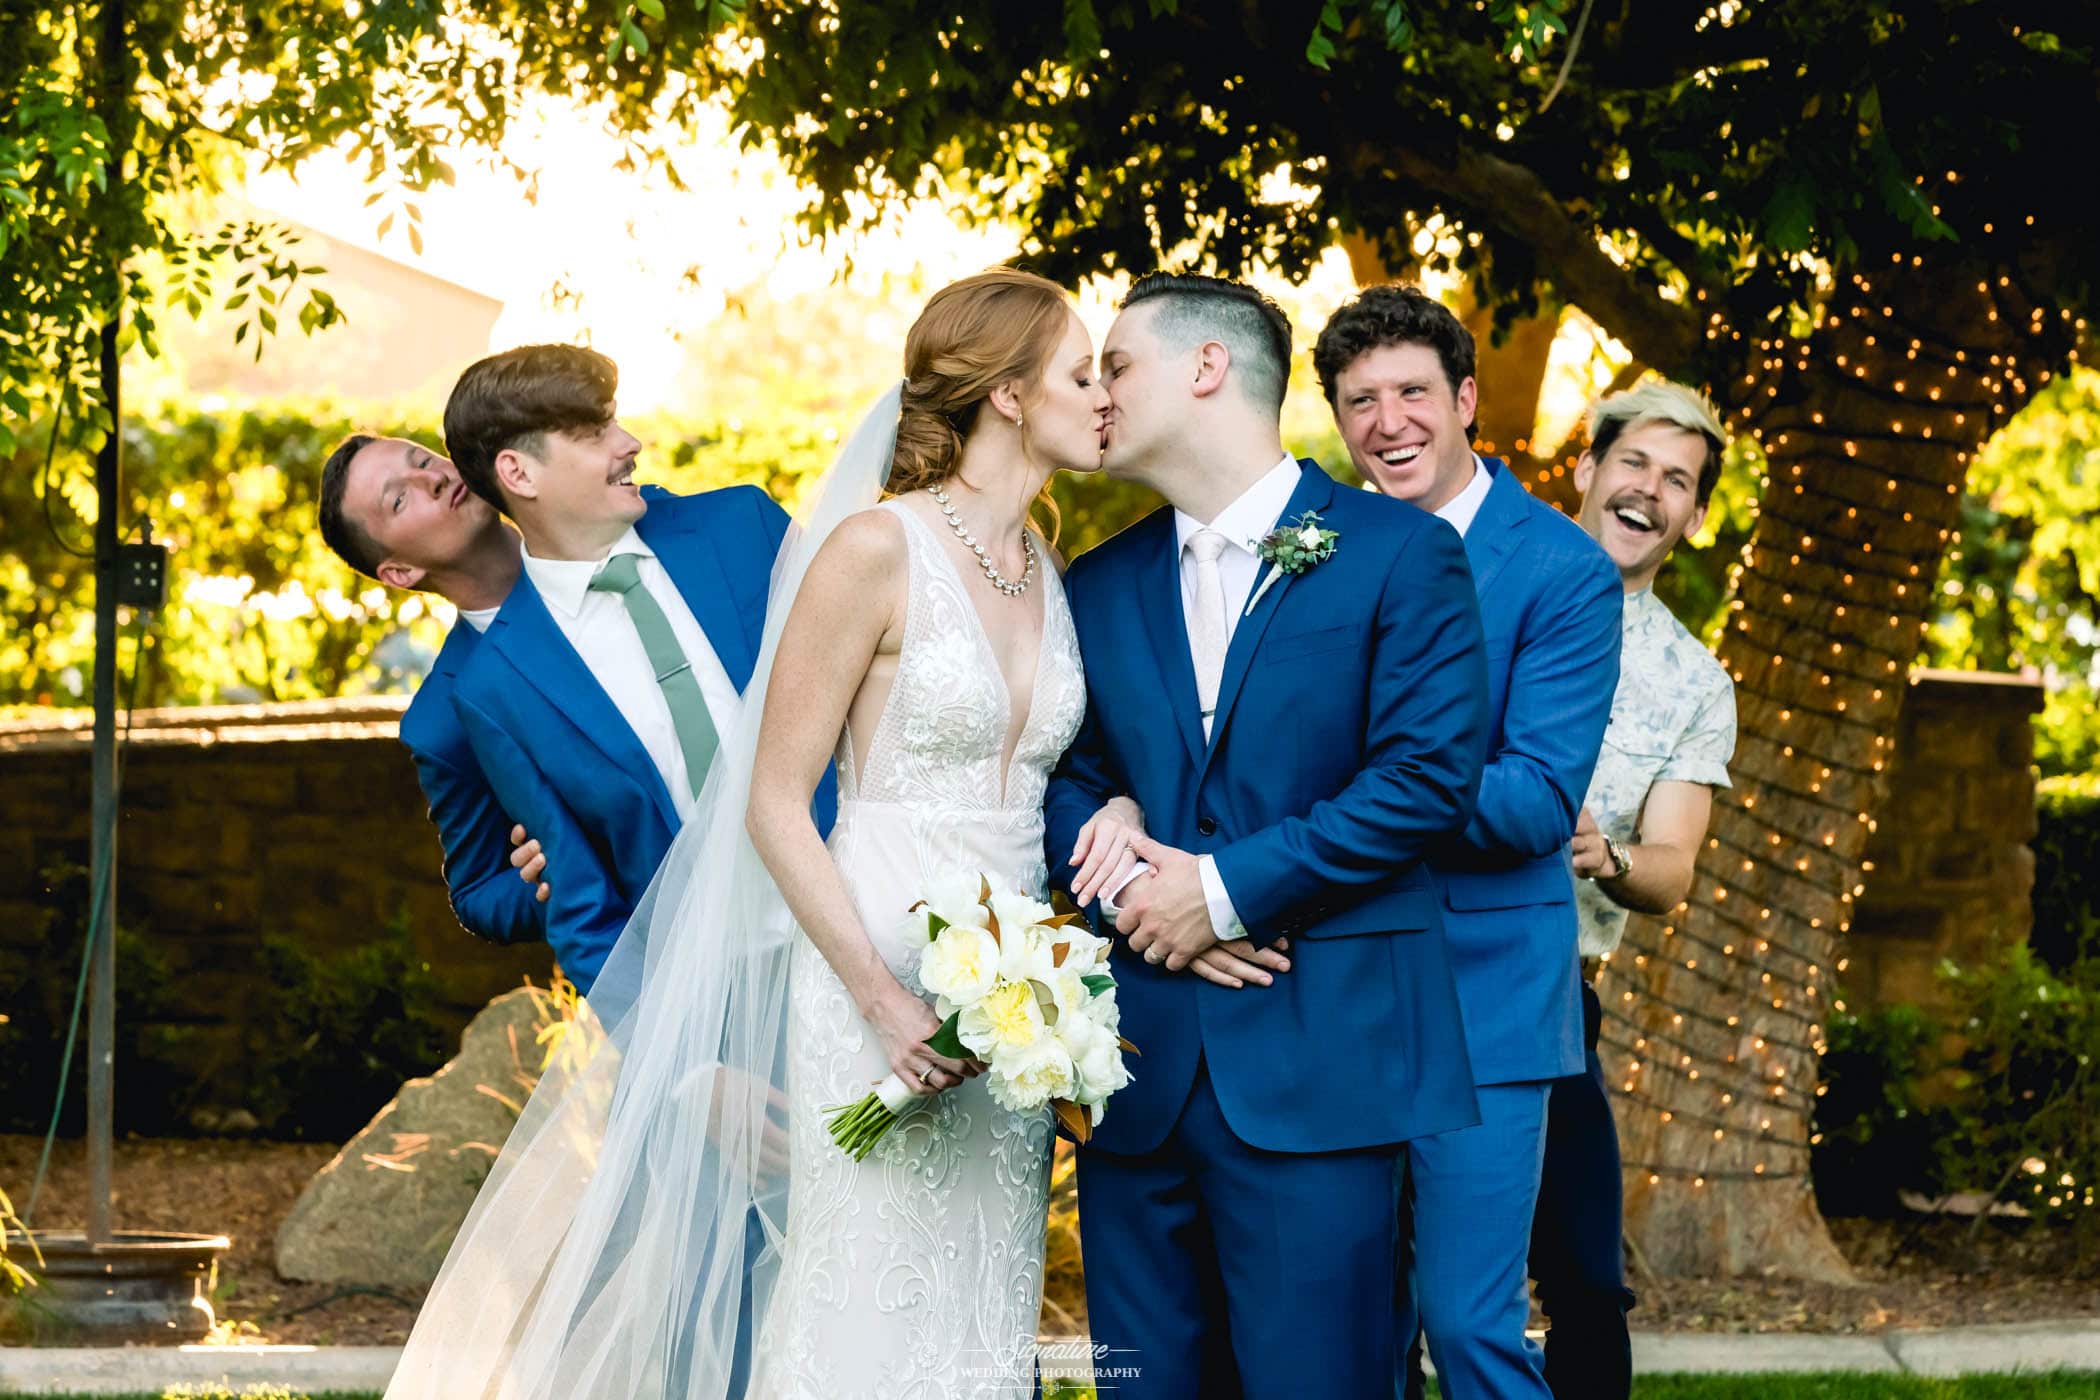 Bride and groom kiss with groomsmen behind reacting